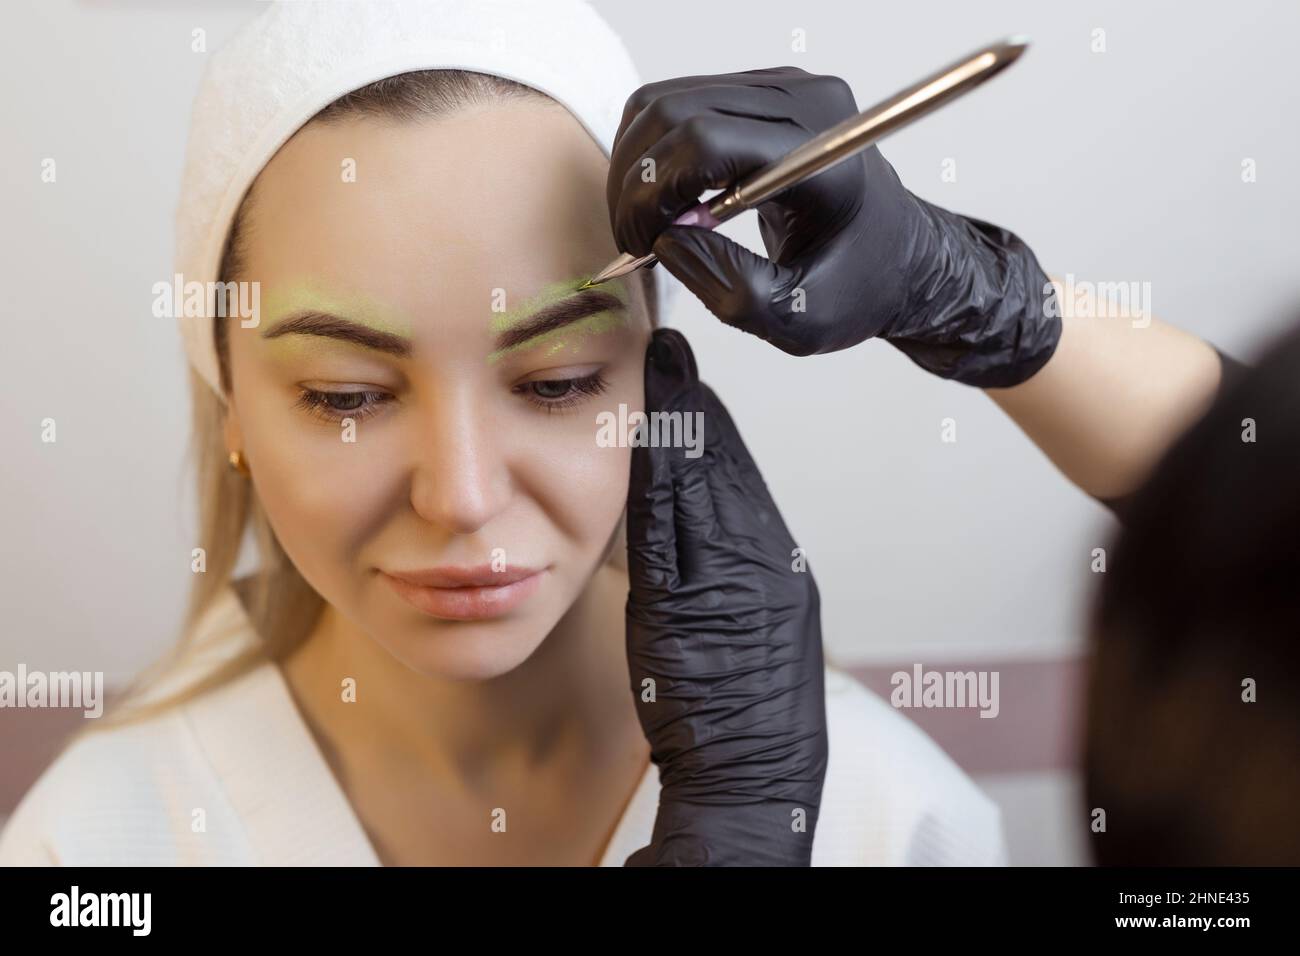 Die Hand eines Make-up Künstlers in schwarzen Handschuhen trägt eine gelbe Augenbrauenpaste auf die Augenbraue auf. Professionelle stilvolle dauerhafte Make-up, Augenbrauen färben Stockfoto